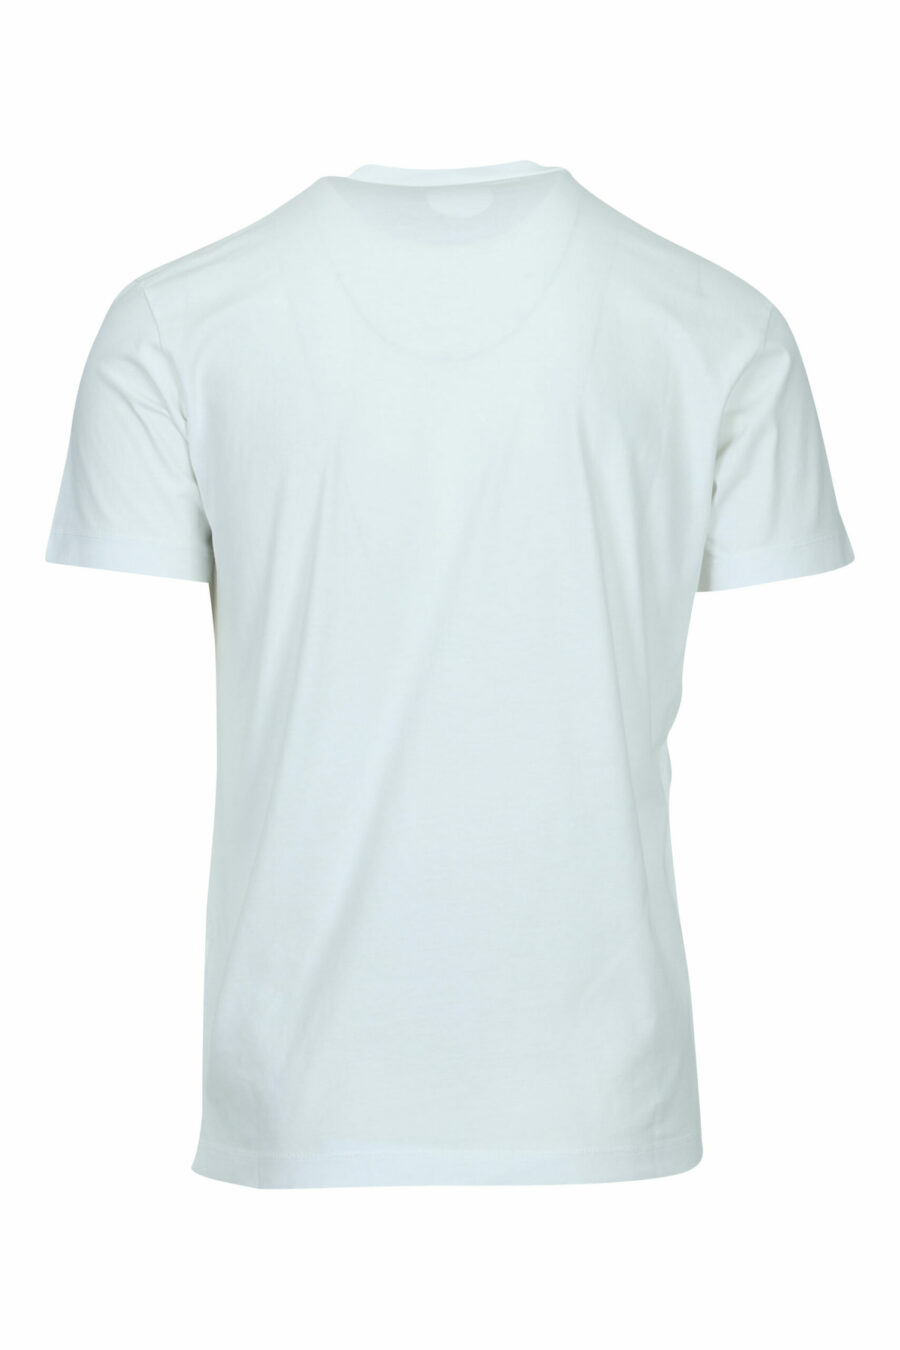 T-shirt branca com o logótipo "milano" dobrado - 8054148570989 1 scaled